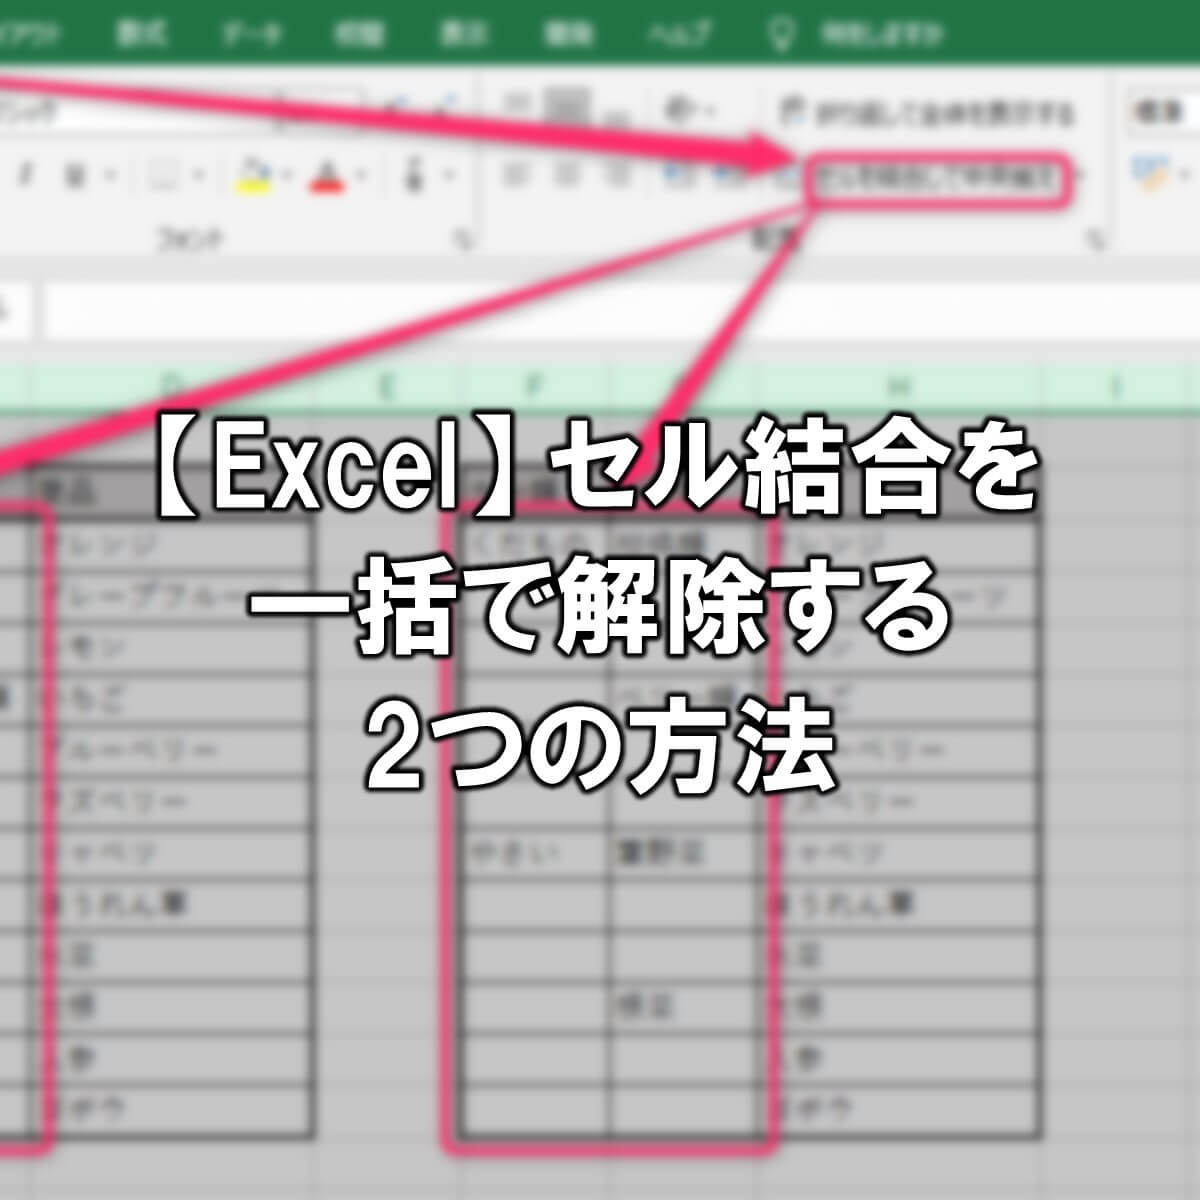 【Excel】セル結合を一括で解除する2つの方法